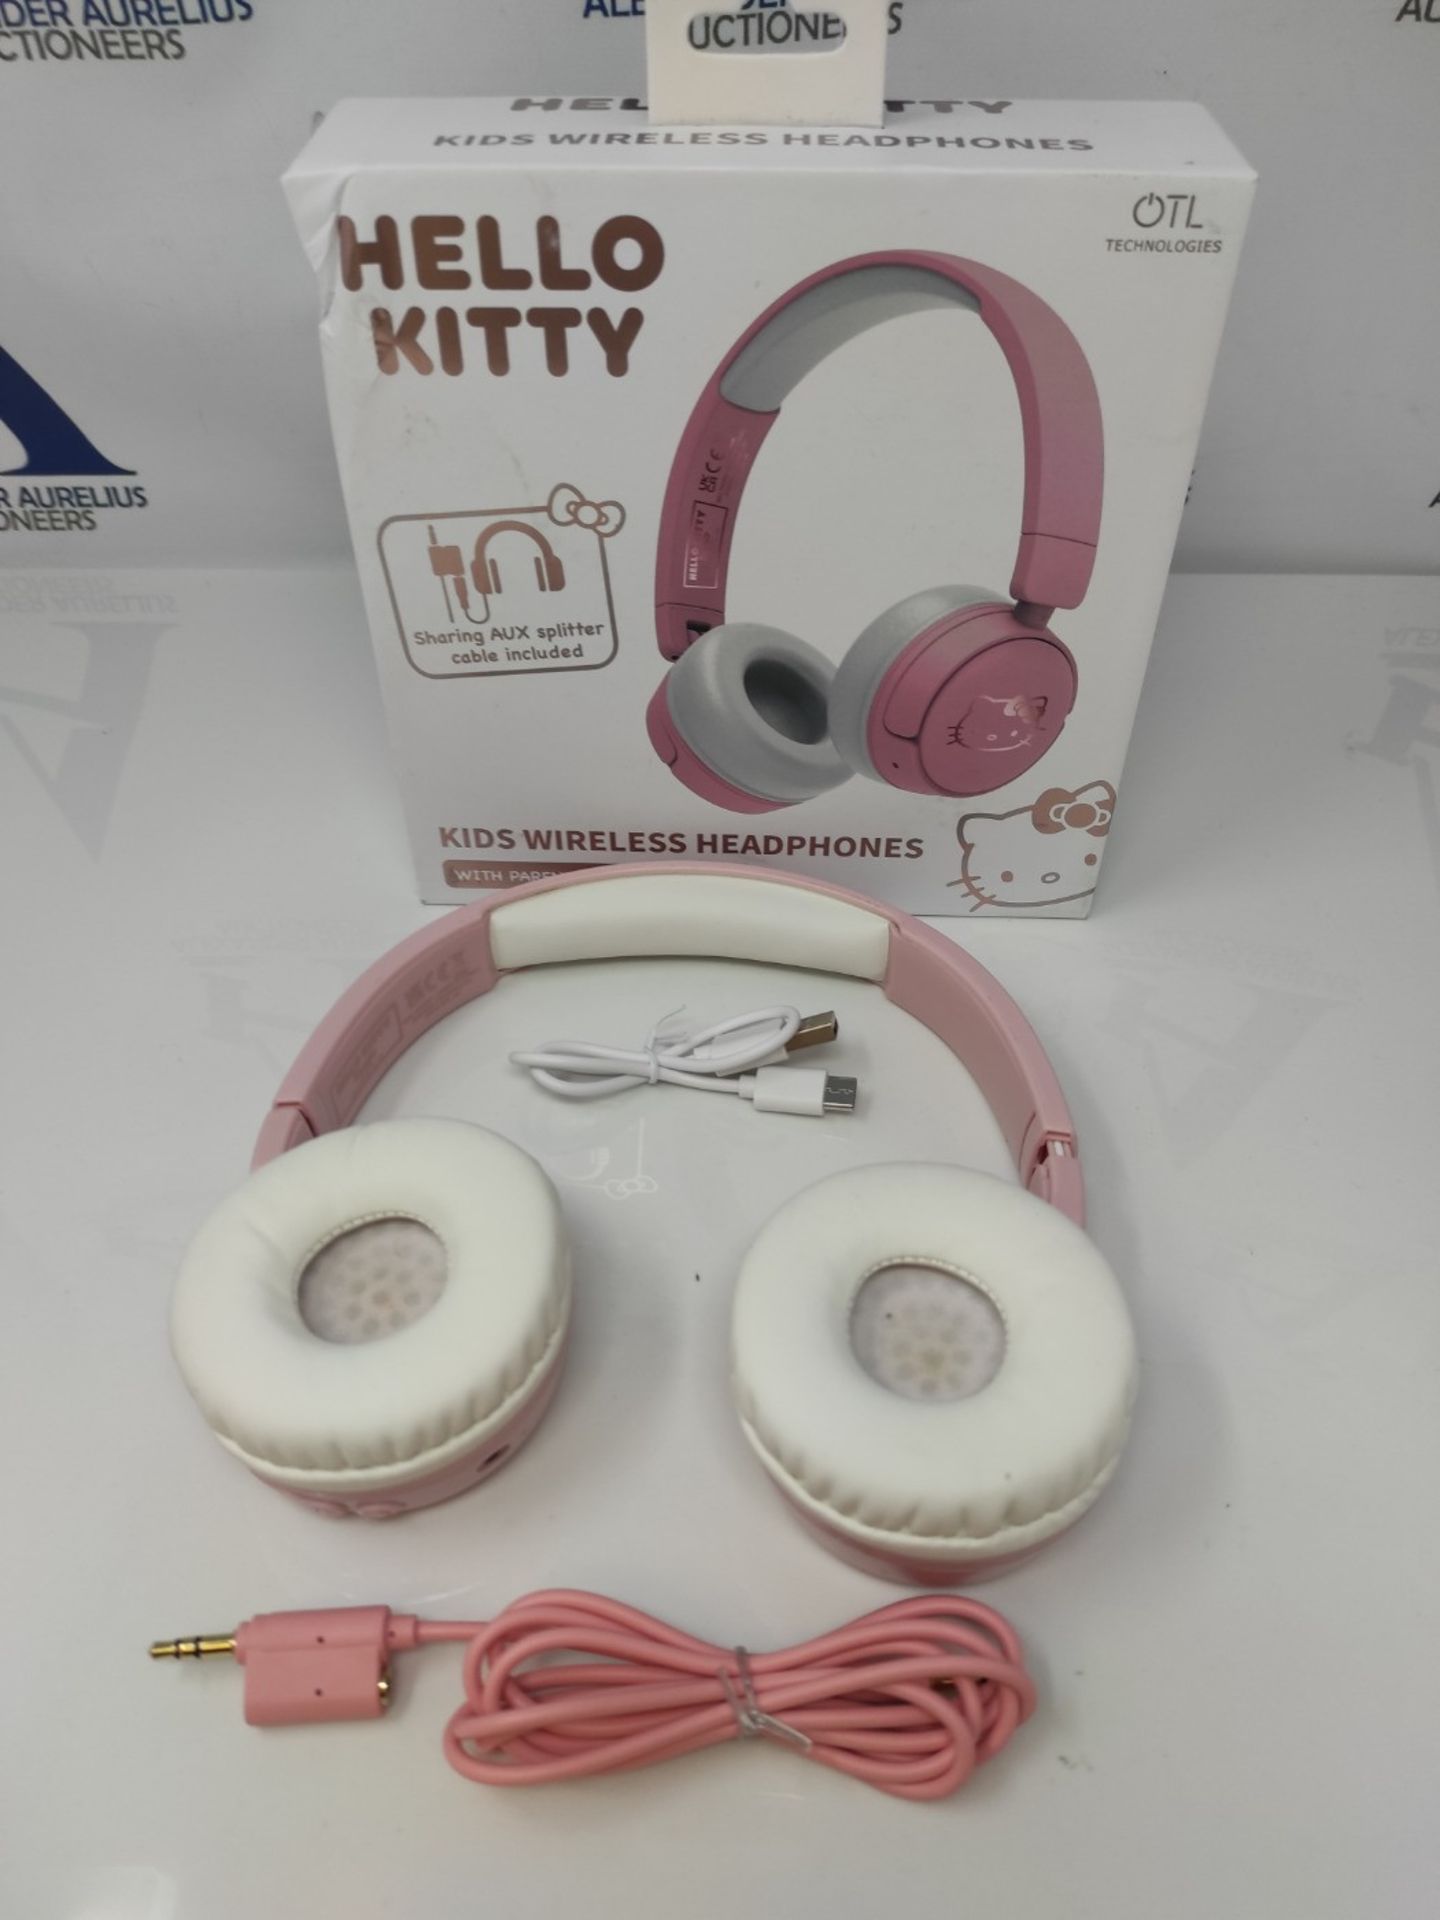 OTL Technologies HK0991 Hello Kitty Kids Wireless Headphones - Pink - Bild 3 aus 3